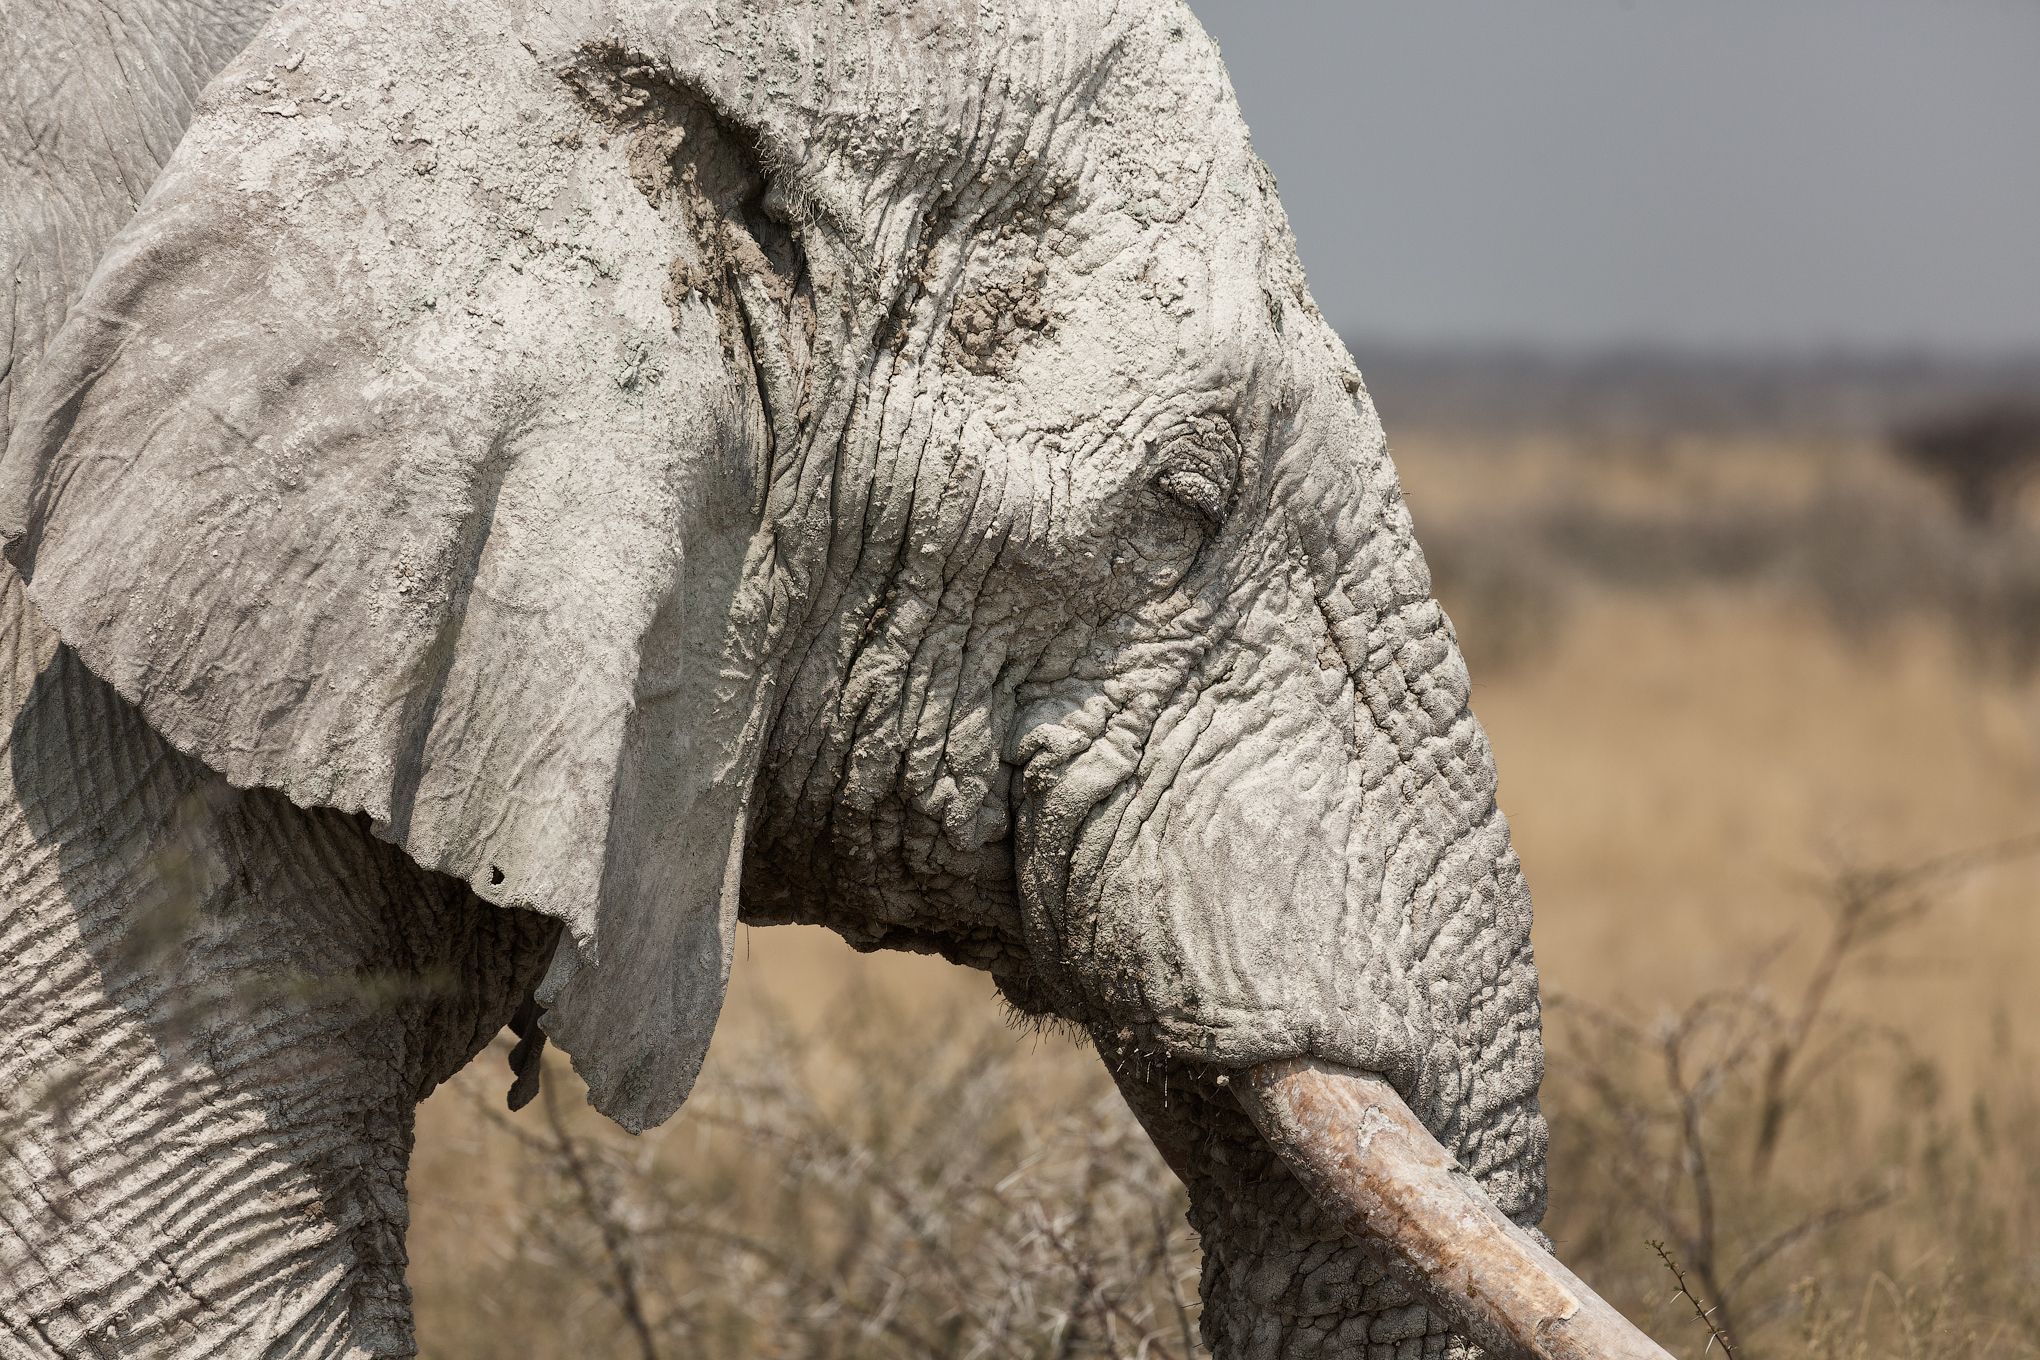 #africa #namibia #etosha #elephant #portrait #слон #намибия #африка #етоша #портрет, Наталия Деркач